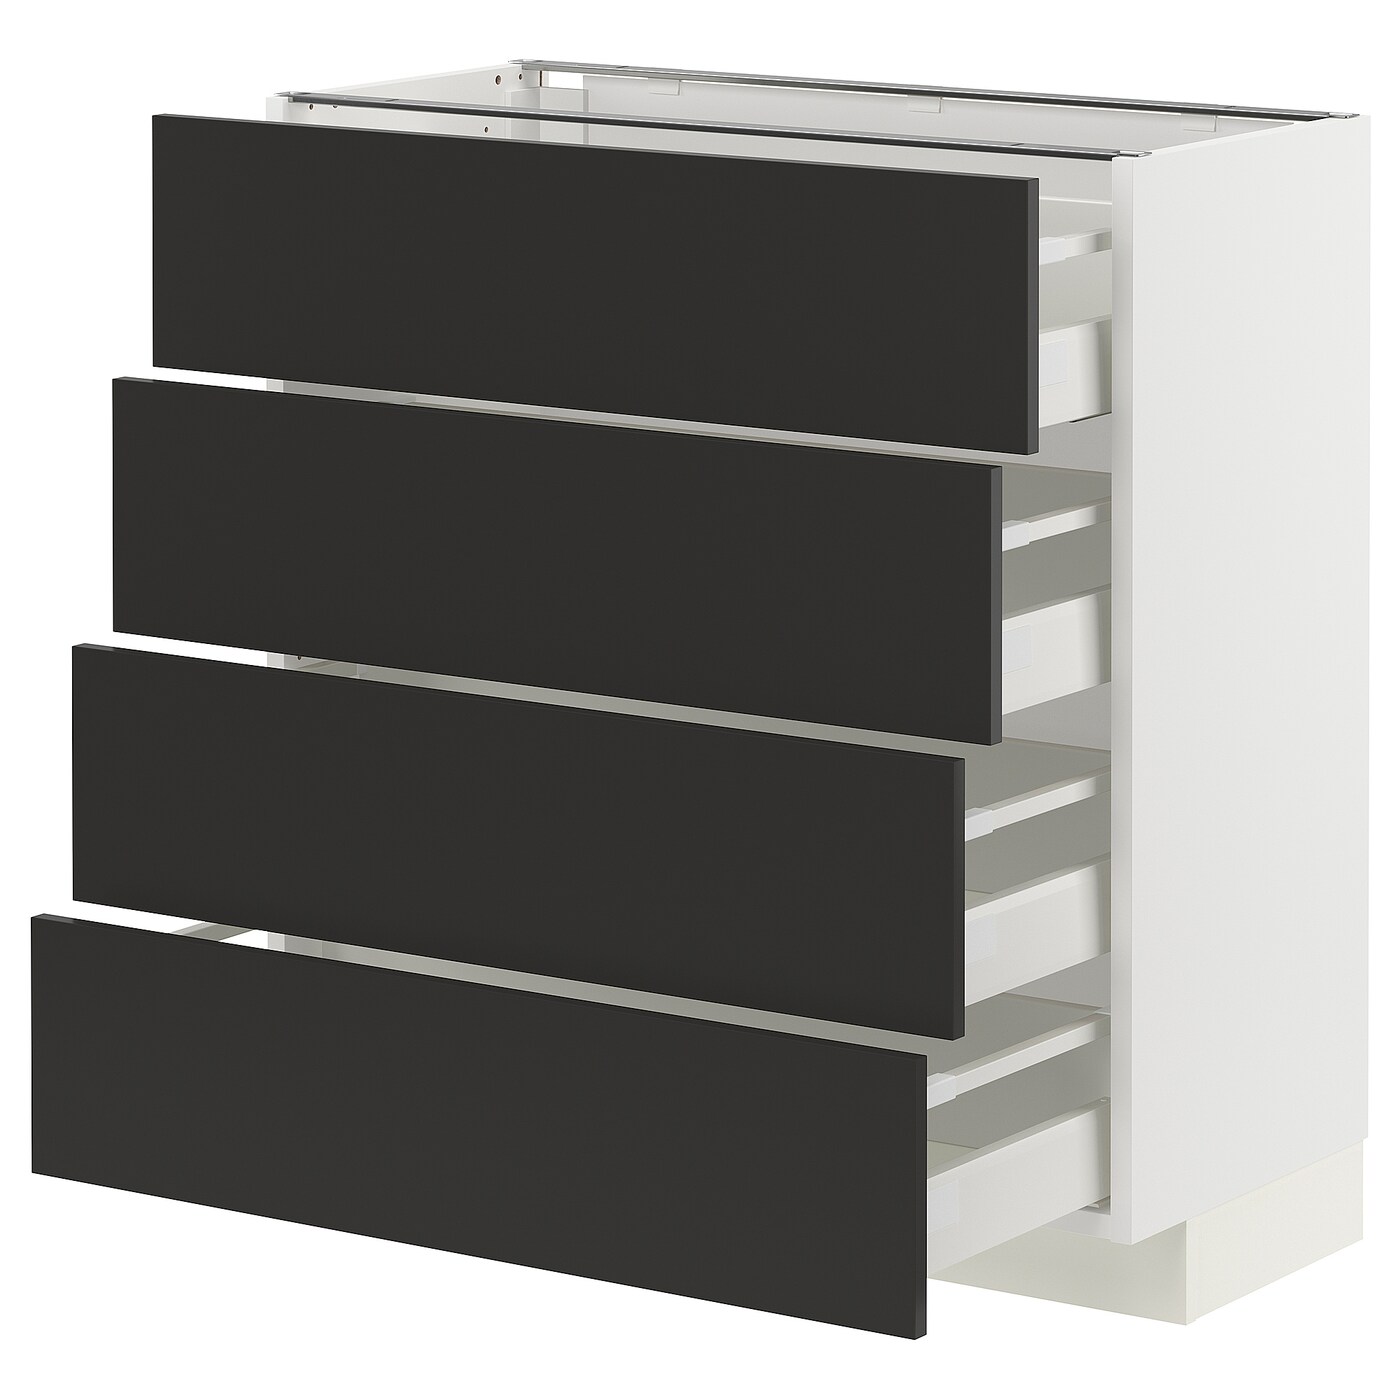 Напольный шкаф  - IKEA METOD MAXIMERA, 88x39,2x80см, белый/черный, МЕТОД МАКСИМЕРА ИКЕА